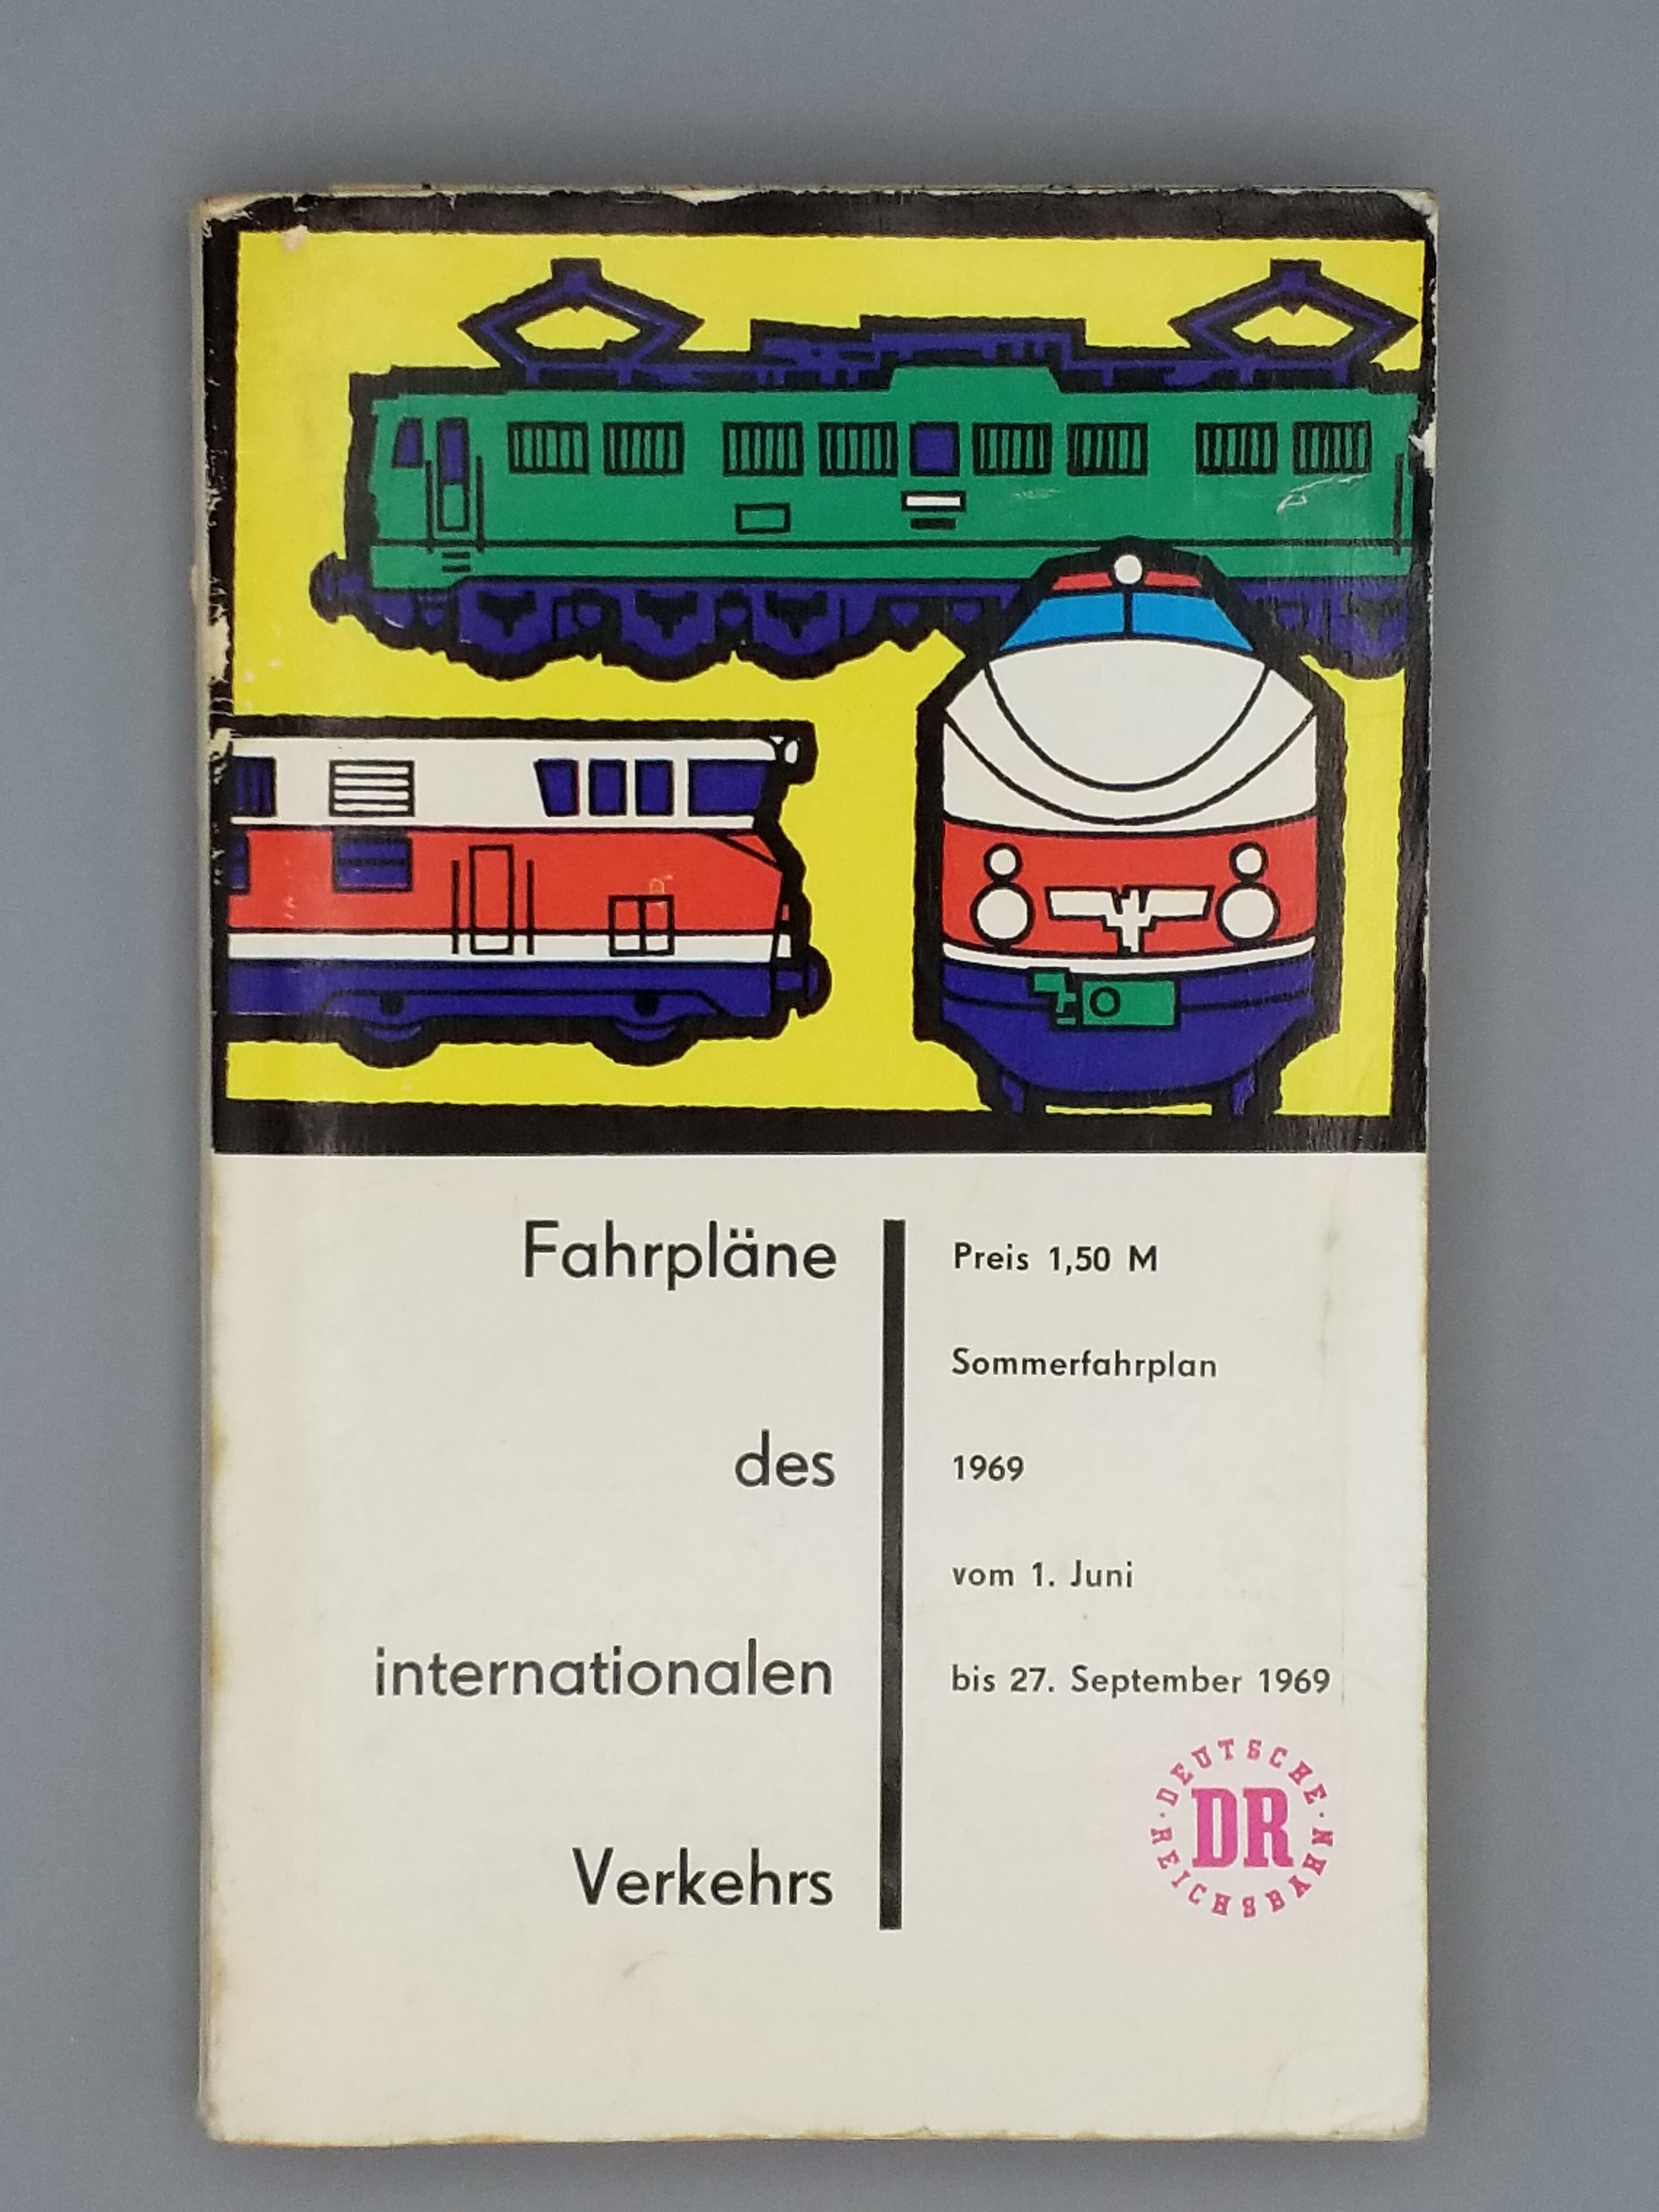 Sommerfahrplan Deutsche Reichsbahn 1969 (Mobile Welten e.V. CC BY-SA)